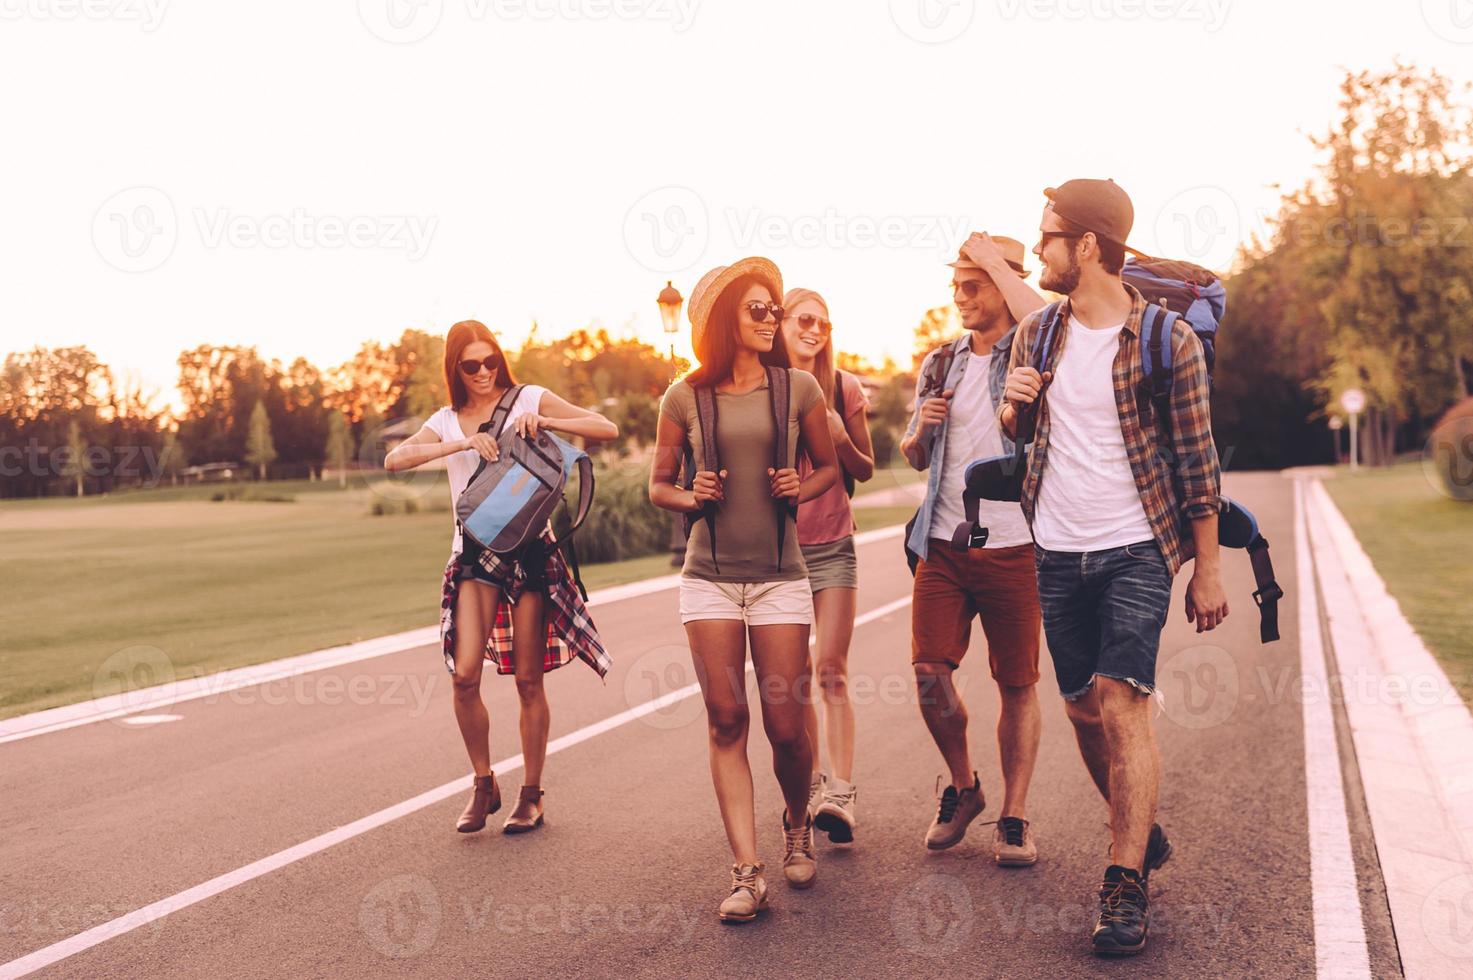 schöner tag zum wandern. Gruppe junger Leute mit Rucksäcken, die zusammen auf der Straße spazieren und glücklich aussehen foto